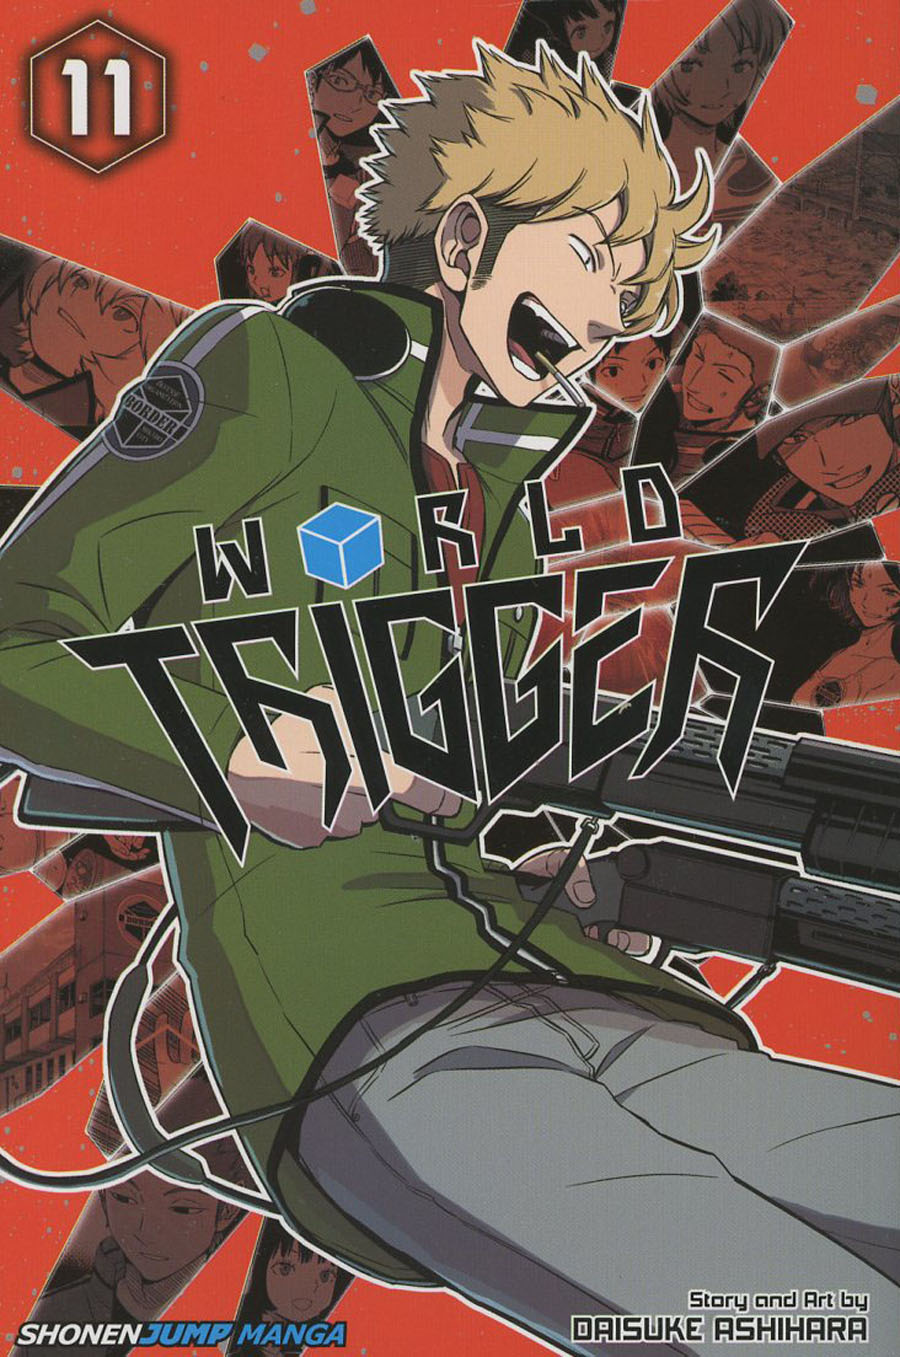 World Trigger Vol 11 TP